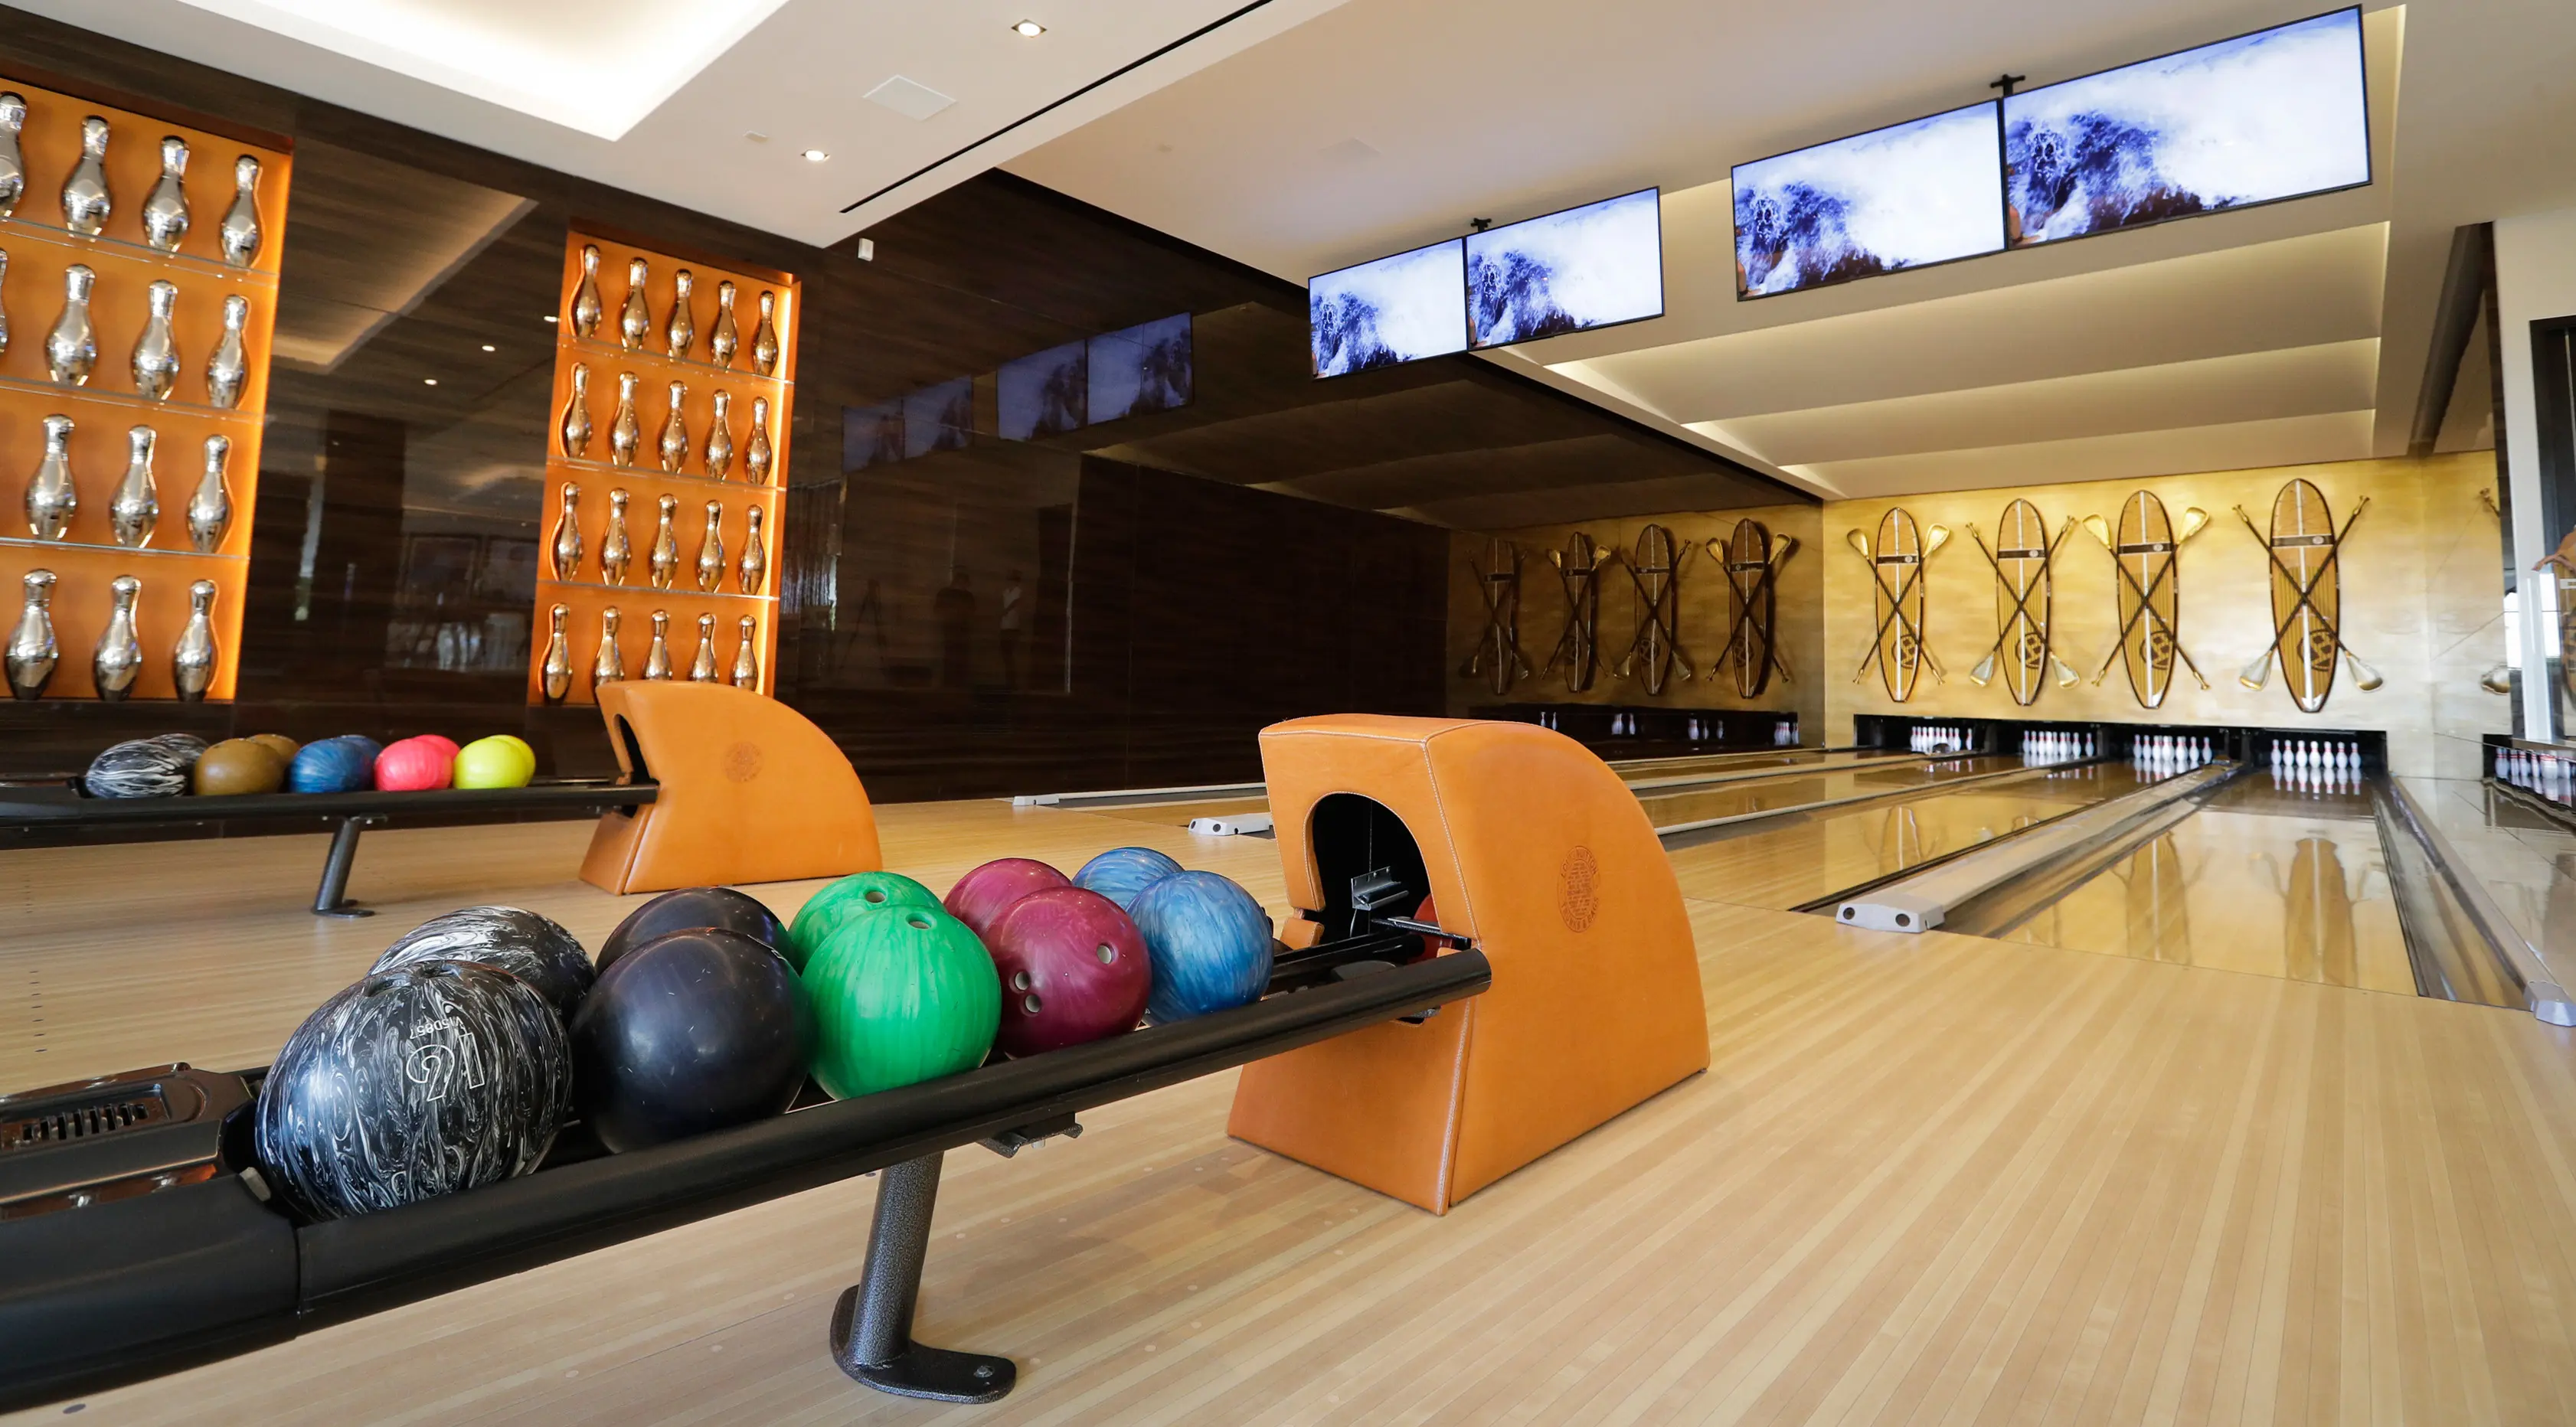 Suasana tempat bermain bowling di rumah mewah di kawasan Bel-Air, Los Angeles,AS (26/1). (AP/Jae C. Hong)